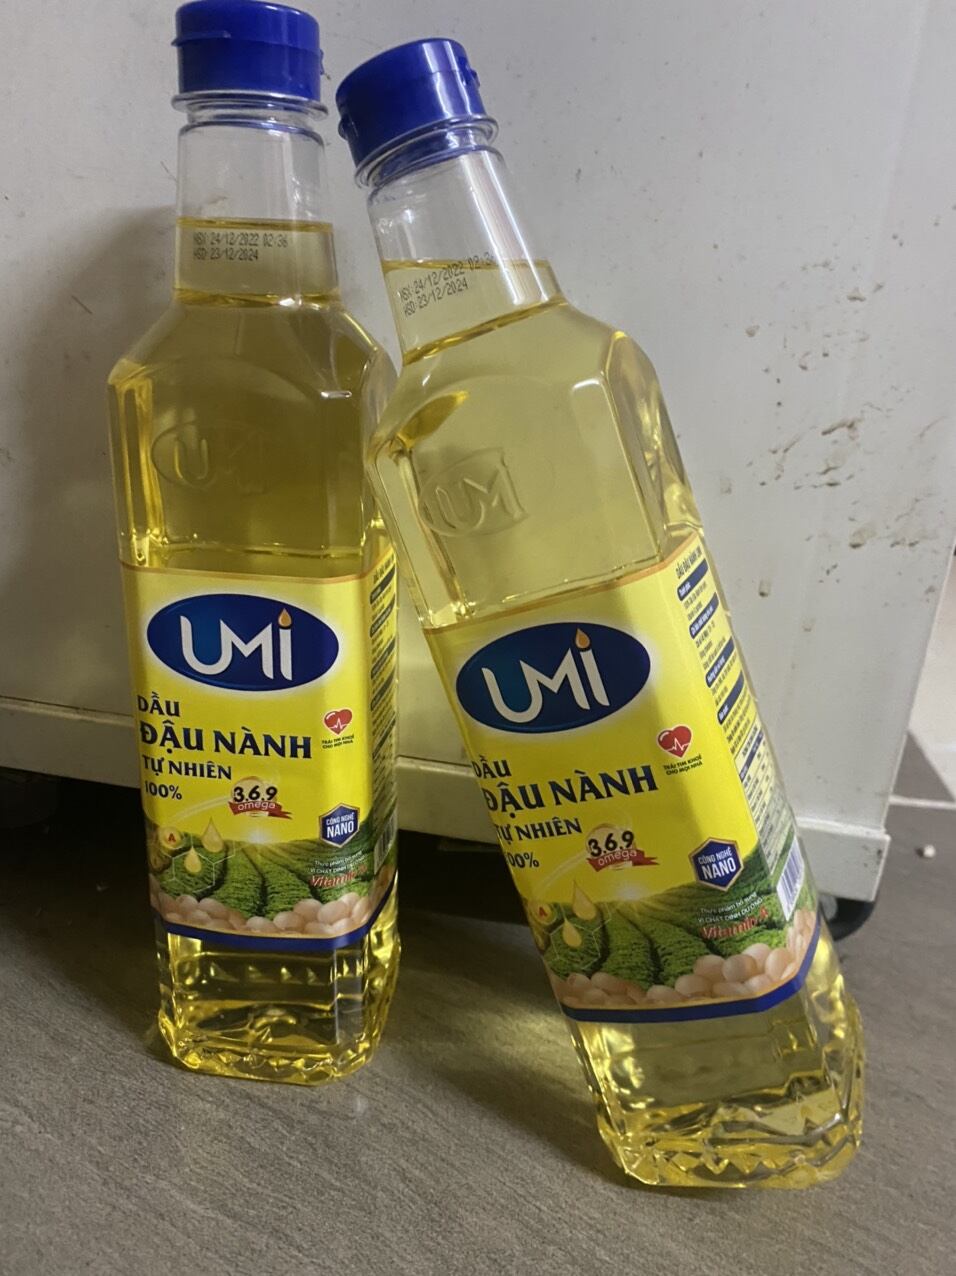 Dầu đậu nành UMI nguyên chất 100% tốt cho sức khoẻ 1 chai 900 ml